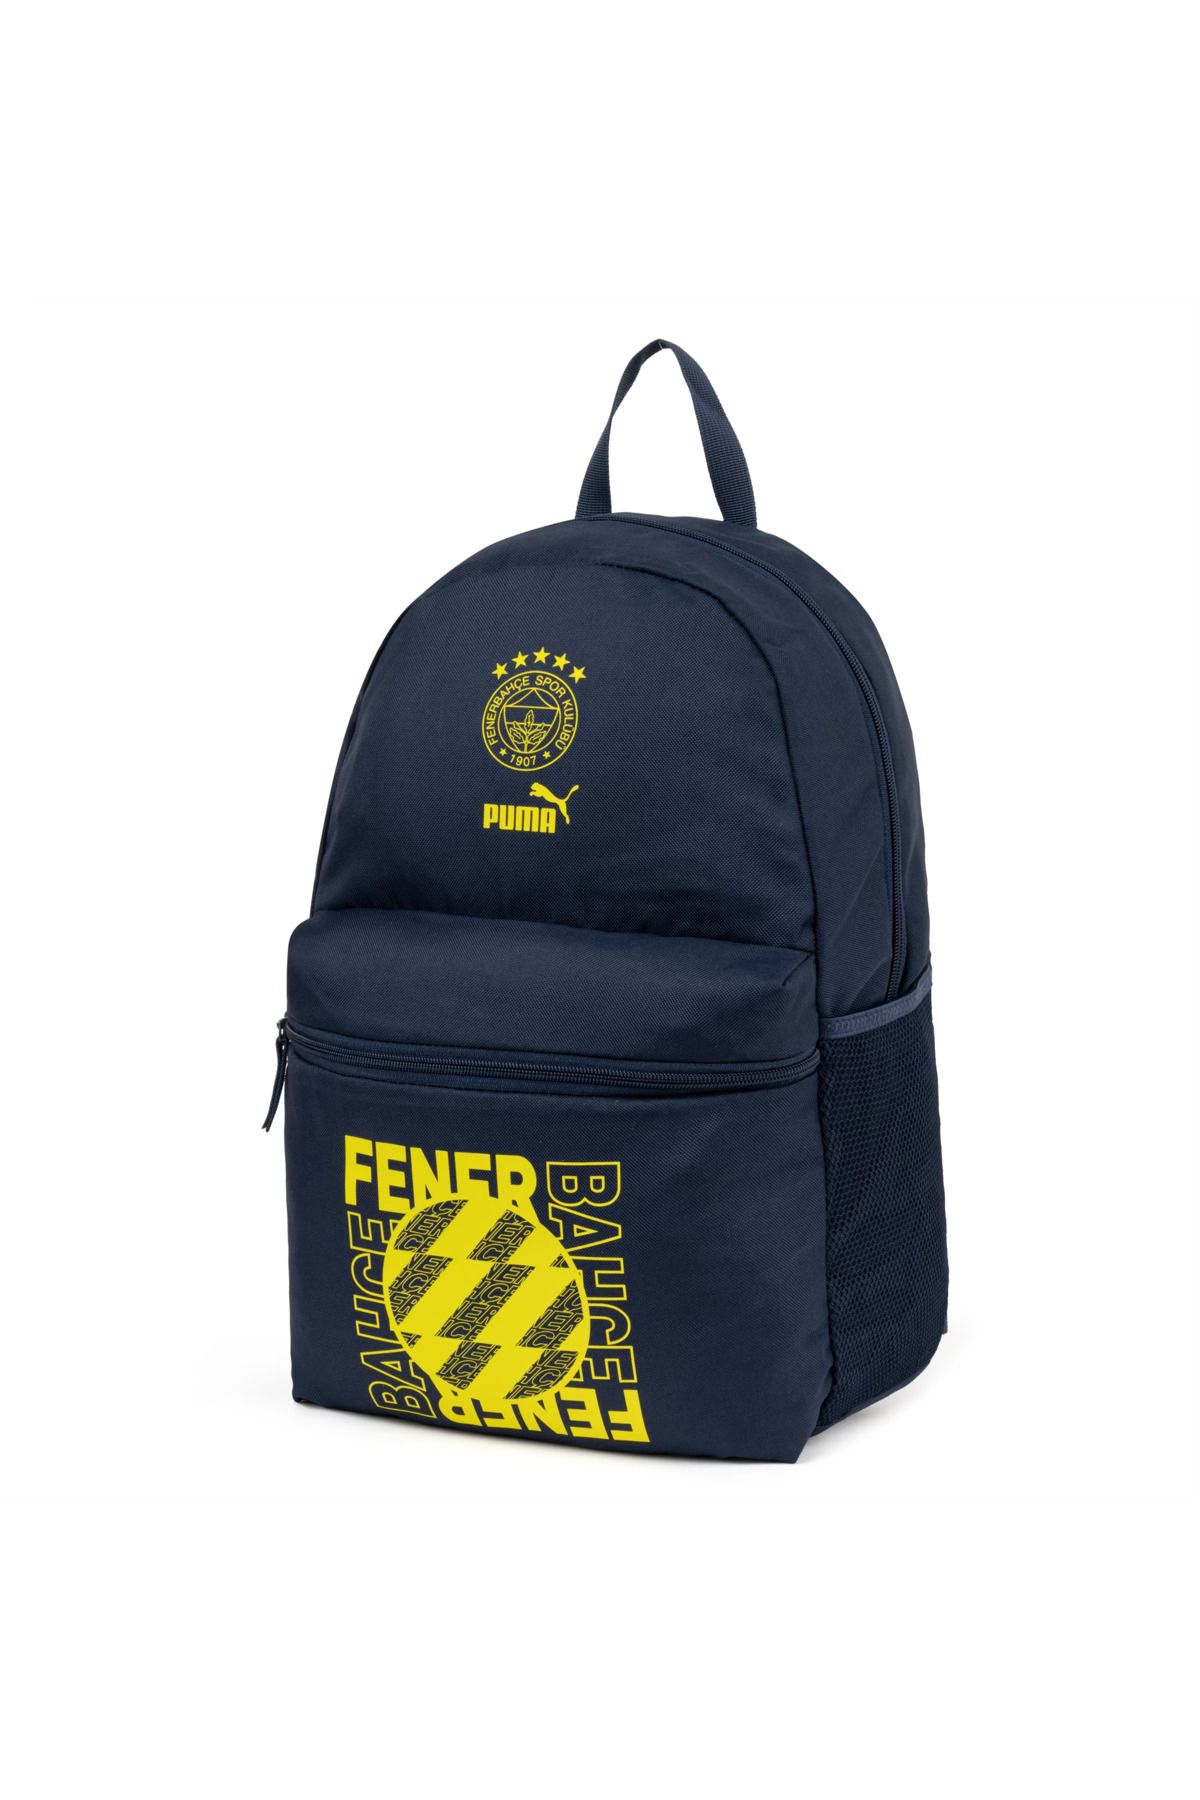 Puma FSK Backpack